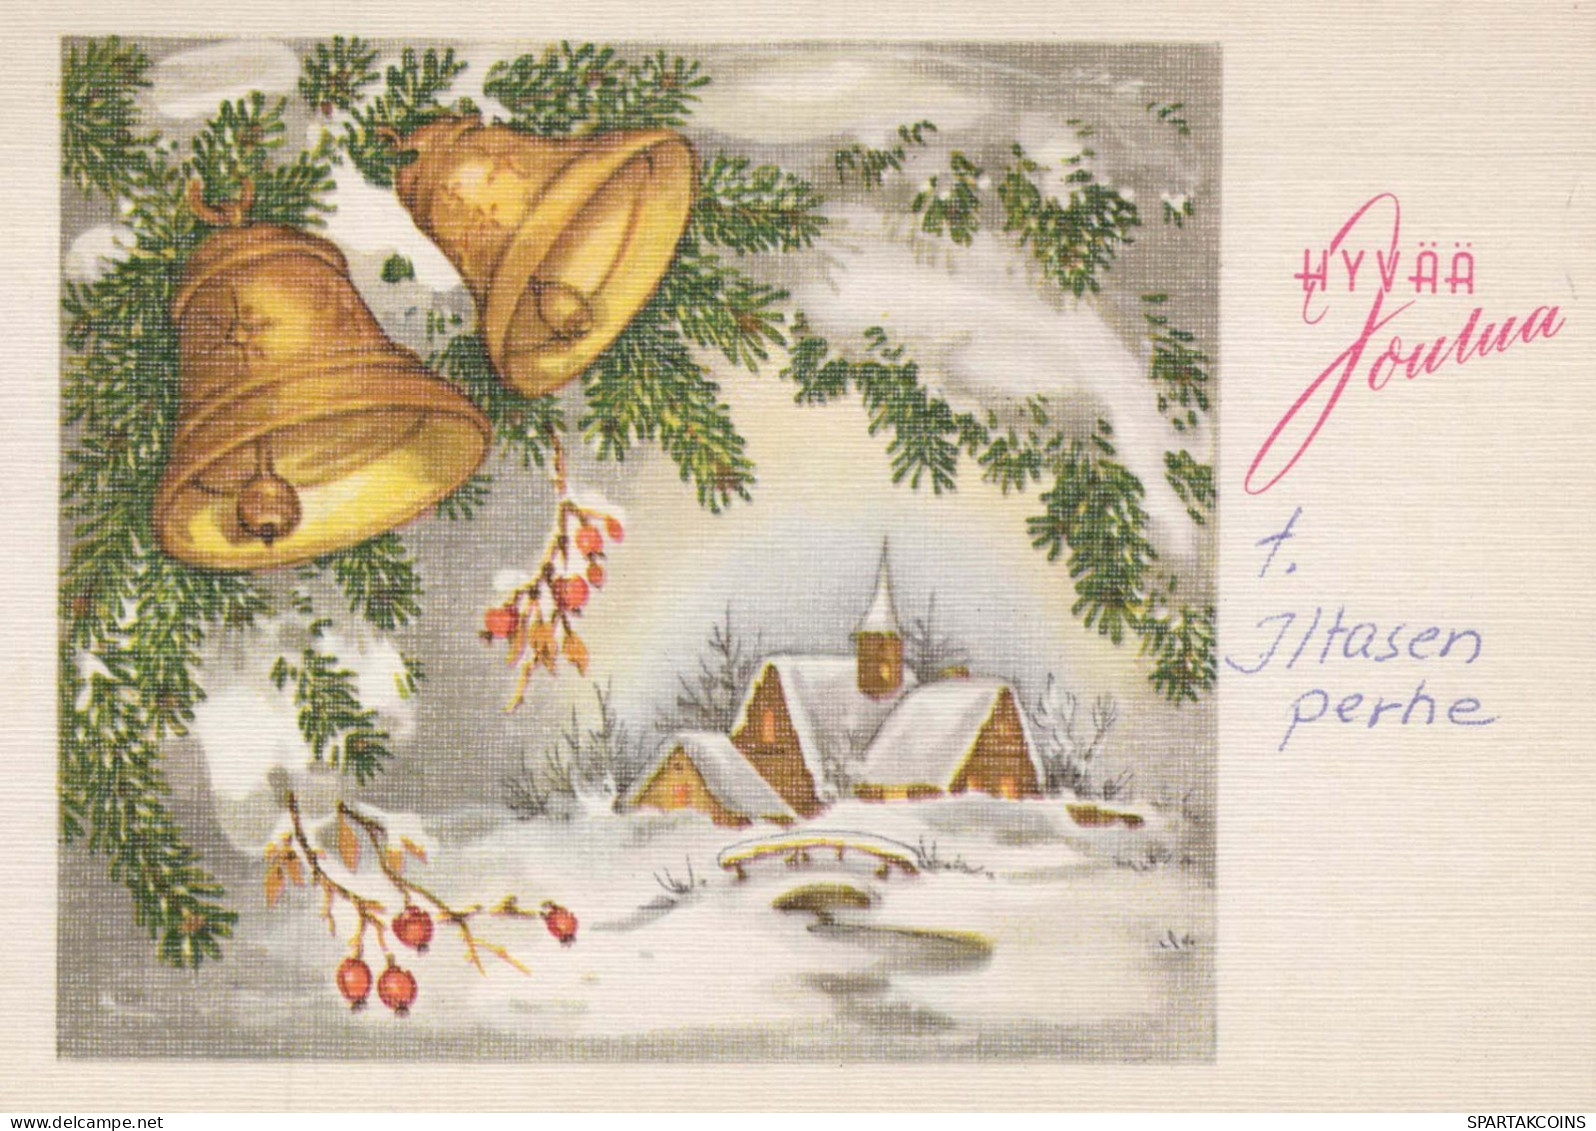 Neujahr Weihnachten KIRCHE Vintage Ansichtskarte Postkarte CPSM #PAY323.DE - Nouvel An